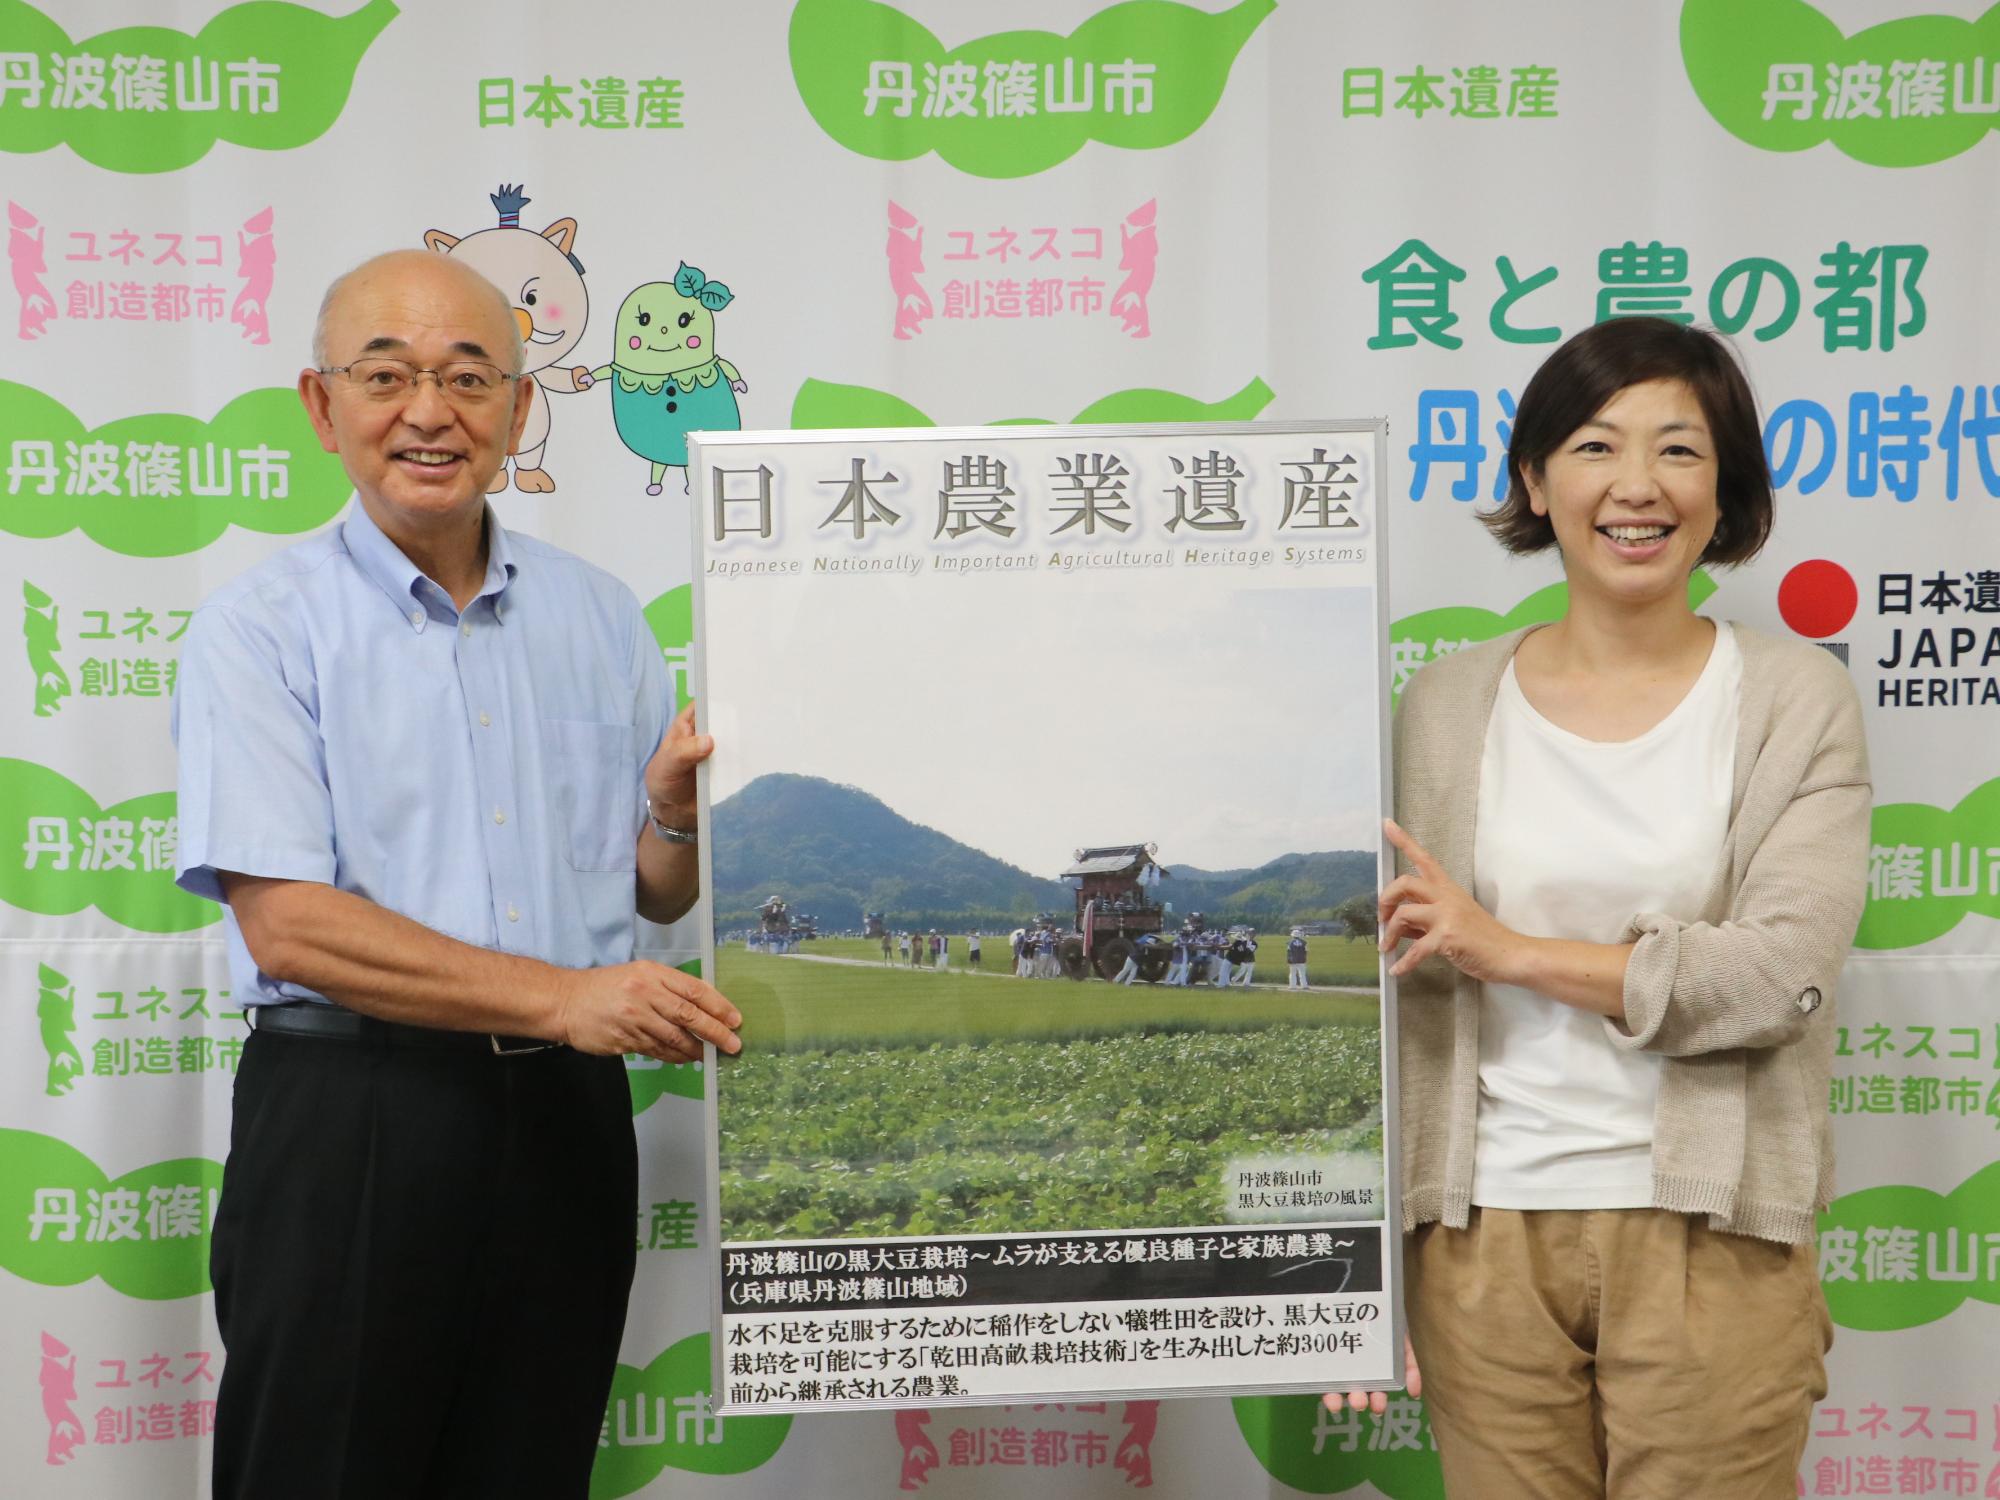 市長と女性が日本農業遺産のパネルを持っている